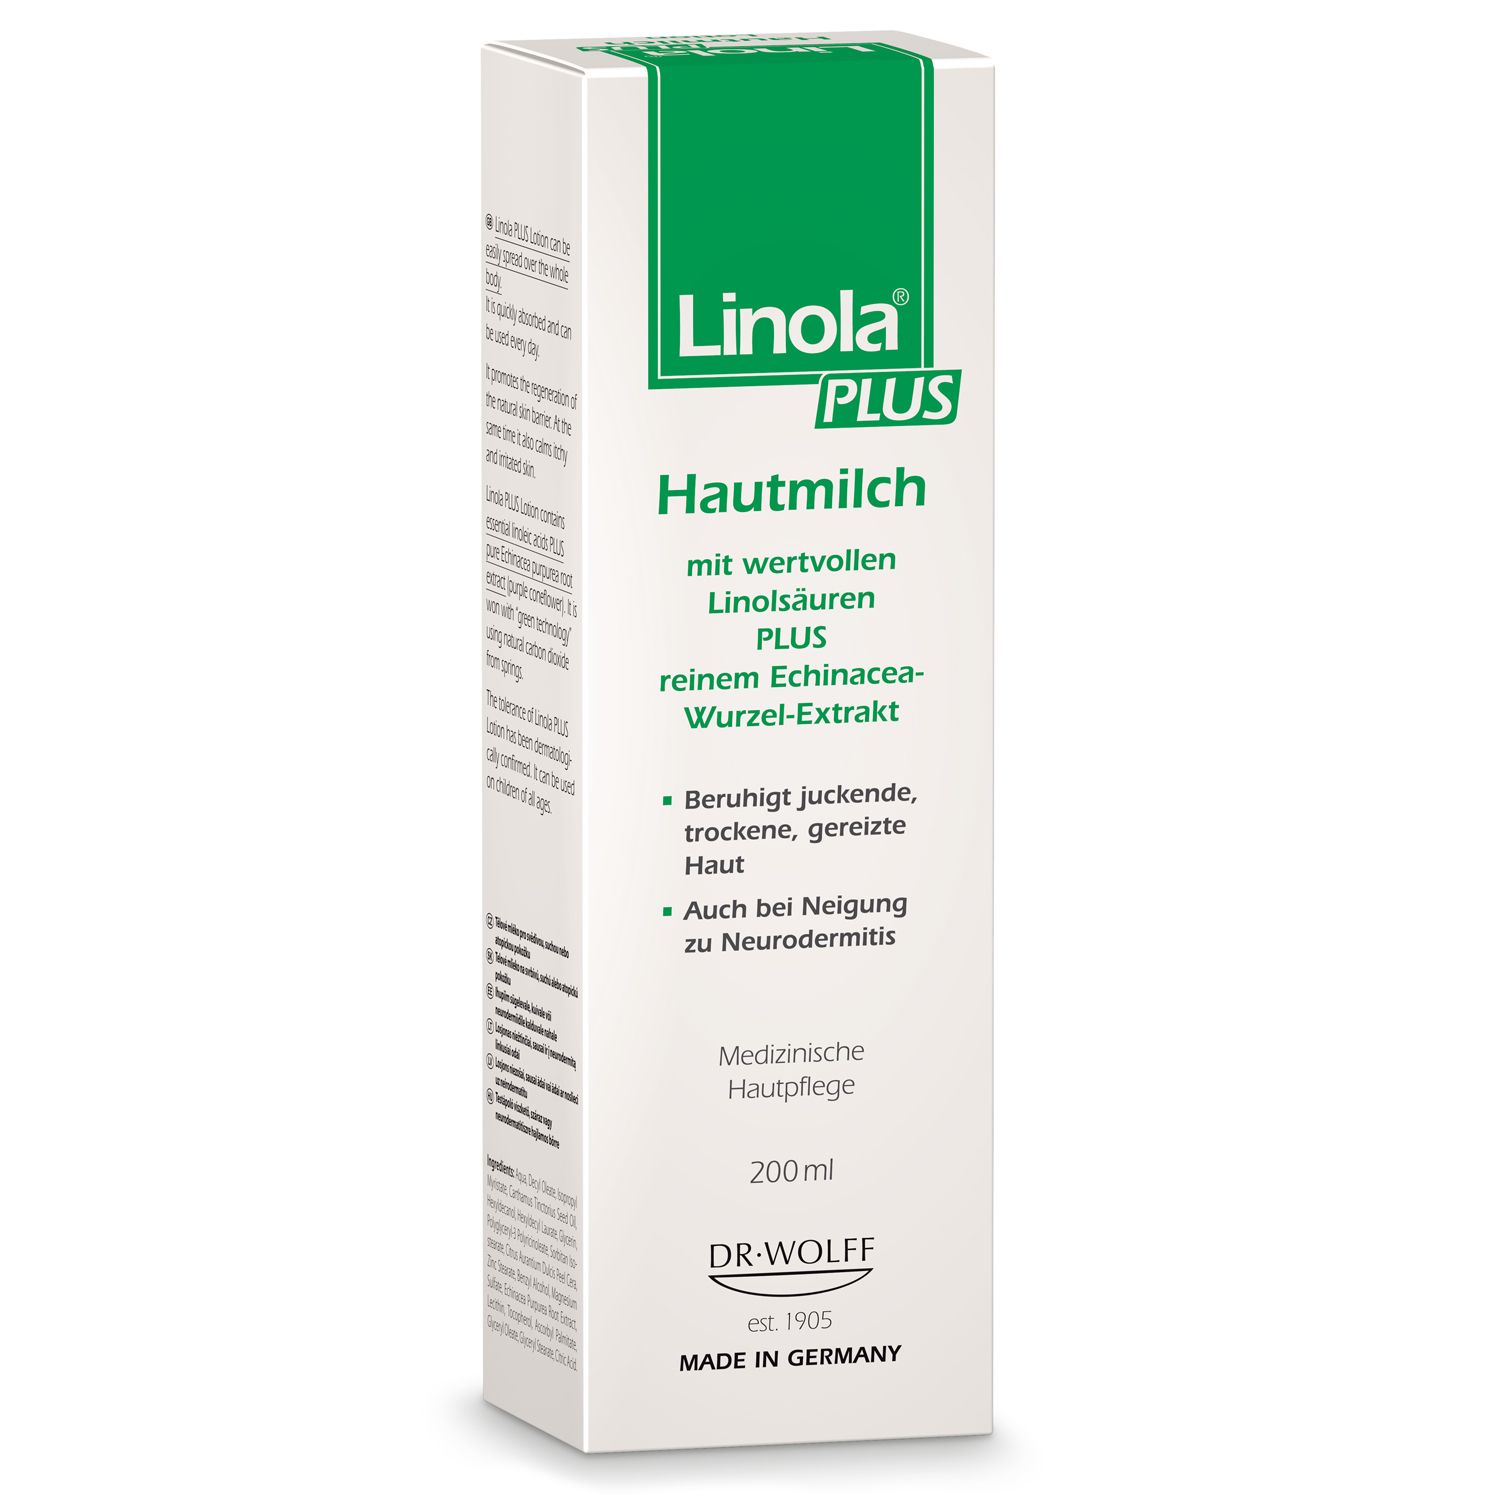 Linola PLUS Hautmilch - Körperlotion für juckende, trockene und irritierte Haut